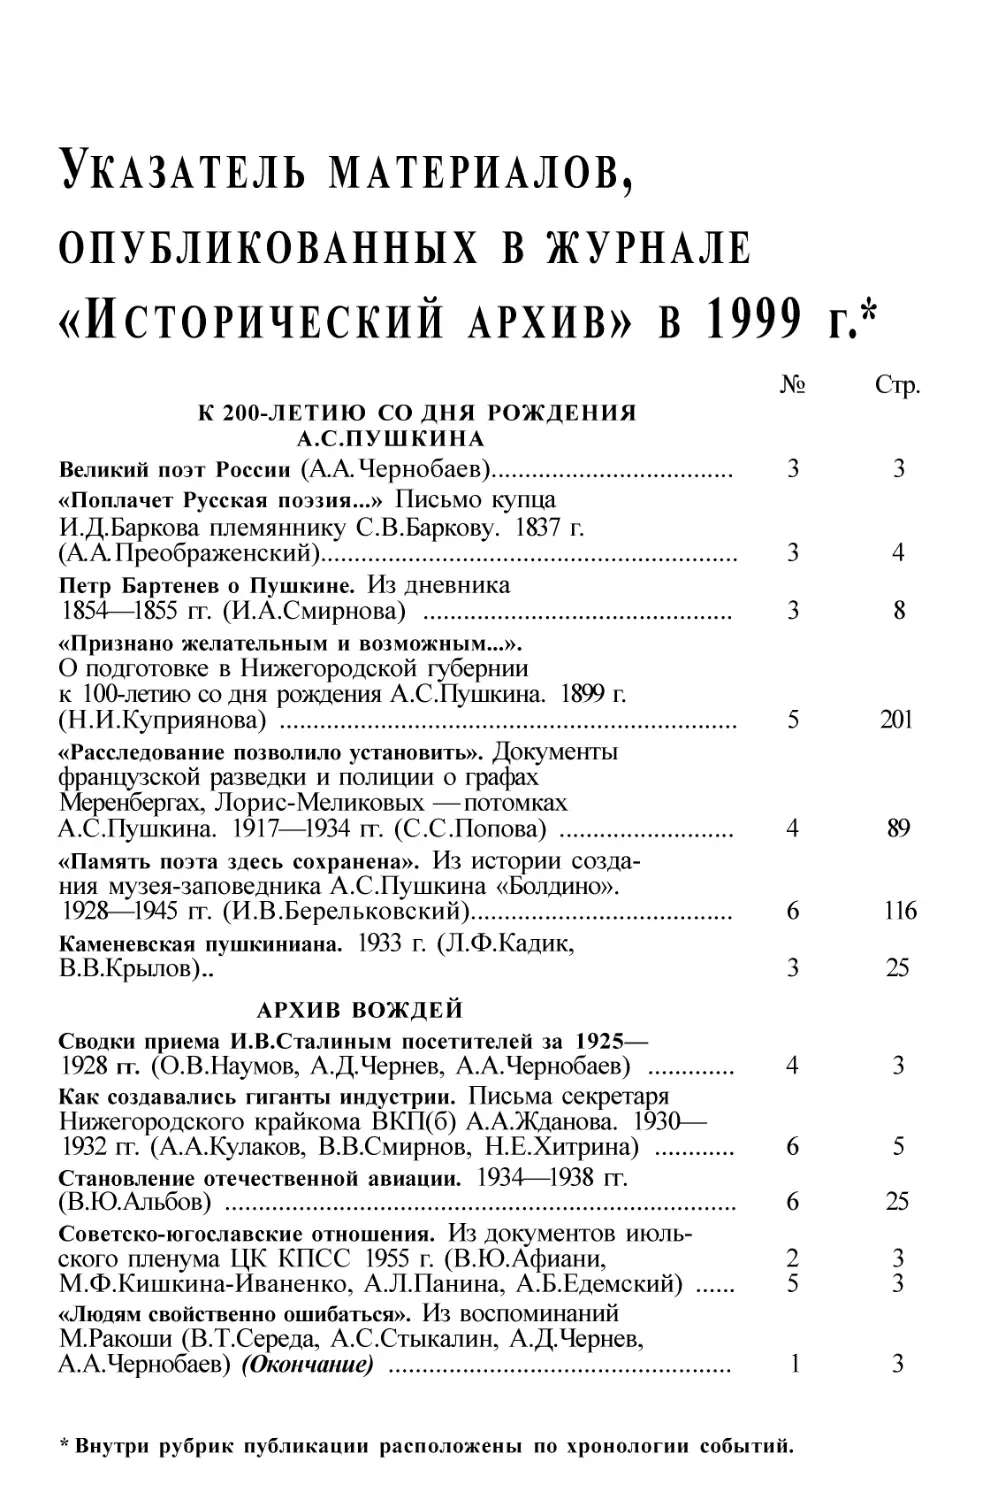 Указатель материалов, опубликованных в журнале «Исторический архив» за 1999 г